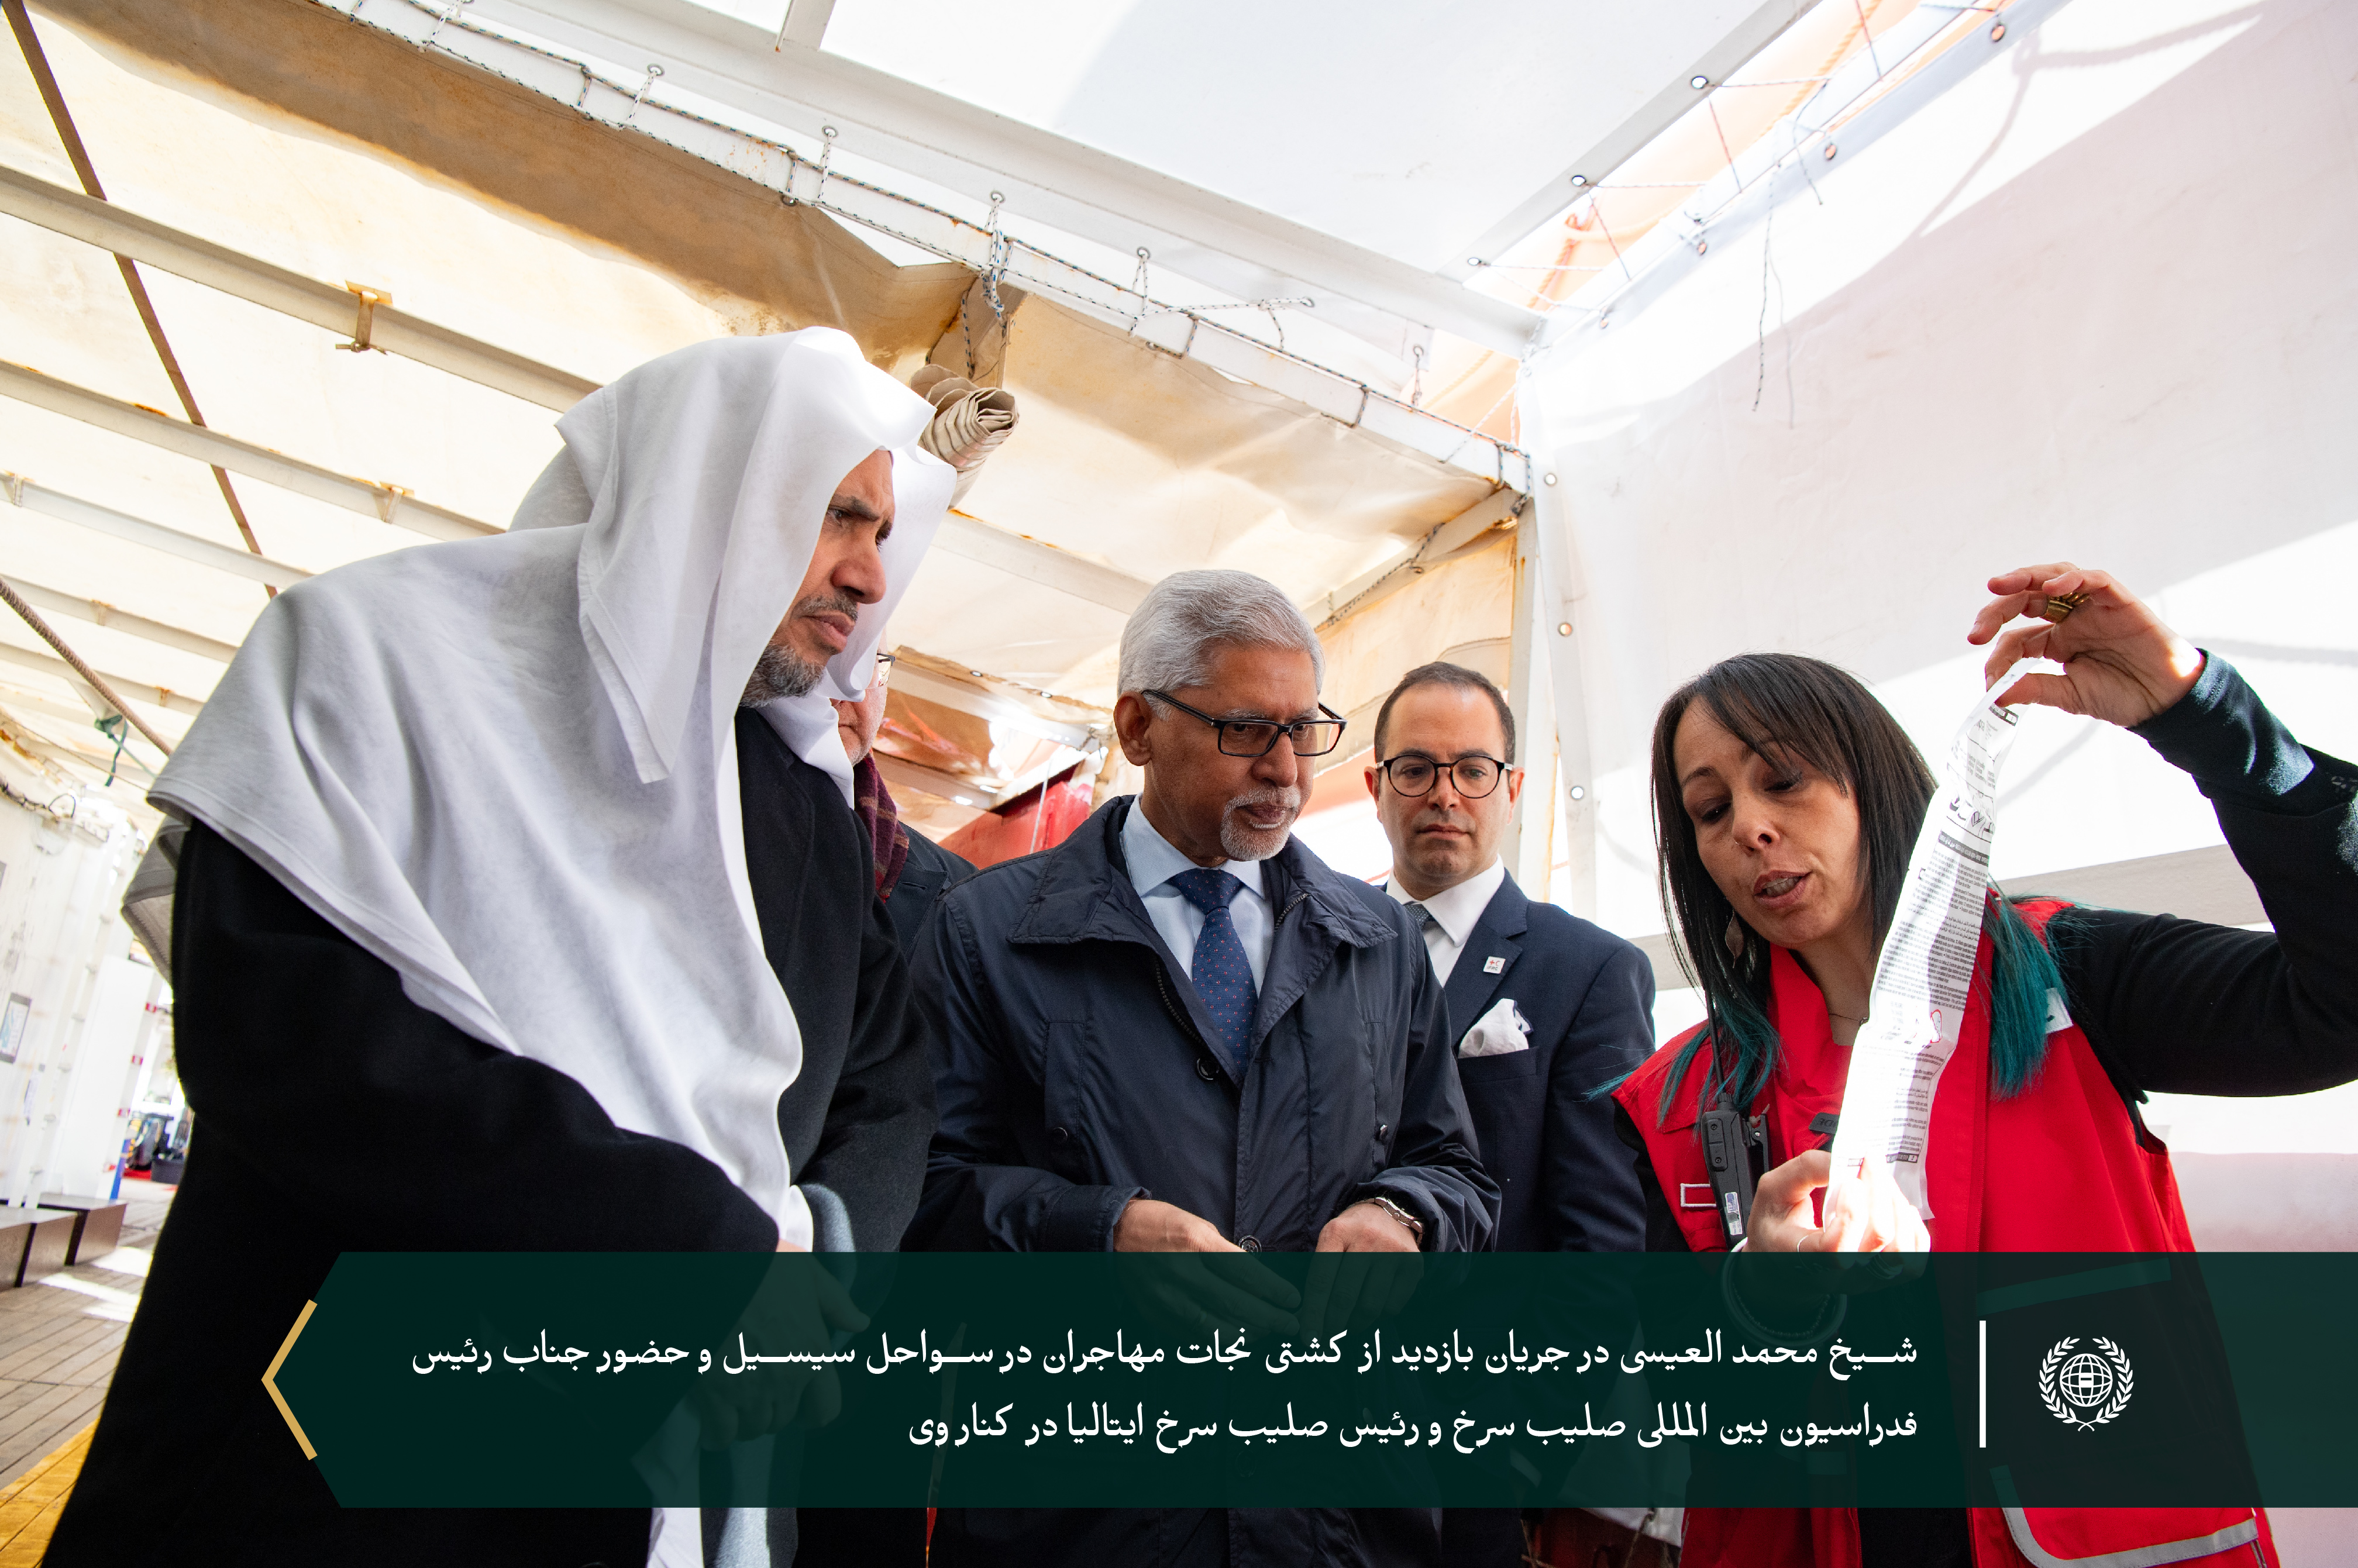 جناب دبیر کل، آقای دکتر شیخ محمد العیسی با حضور رئیس صلیب سرخ ایتالیا با جناب بزرگوار  رئیس فدراسیون بین المللی صلیب سرخ دیدار نمود